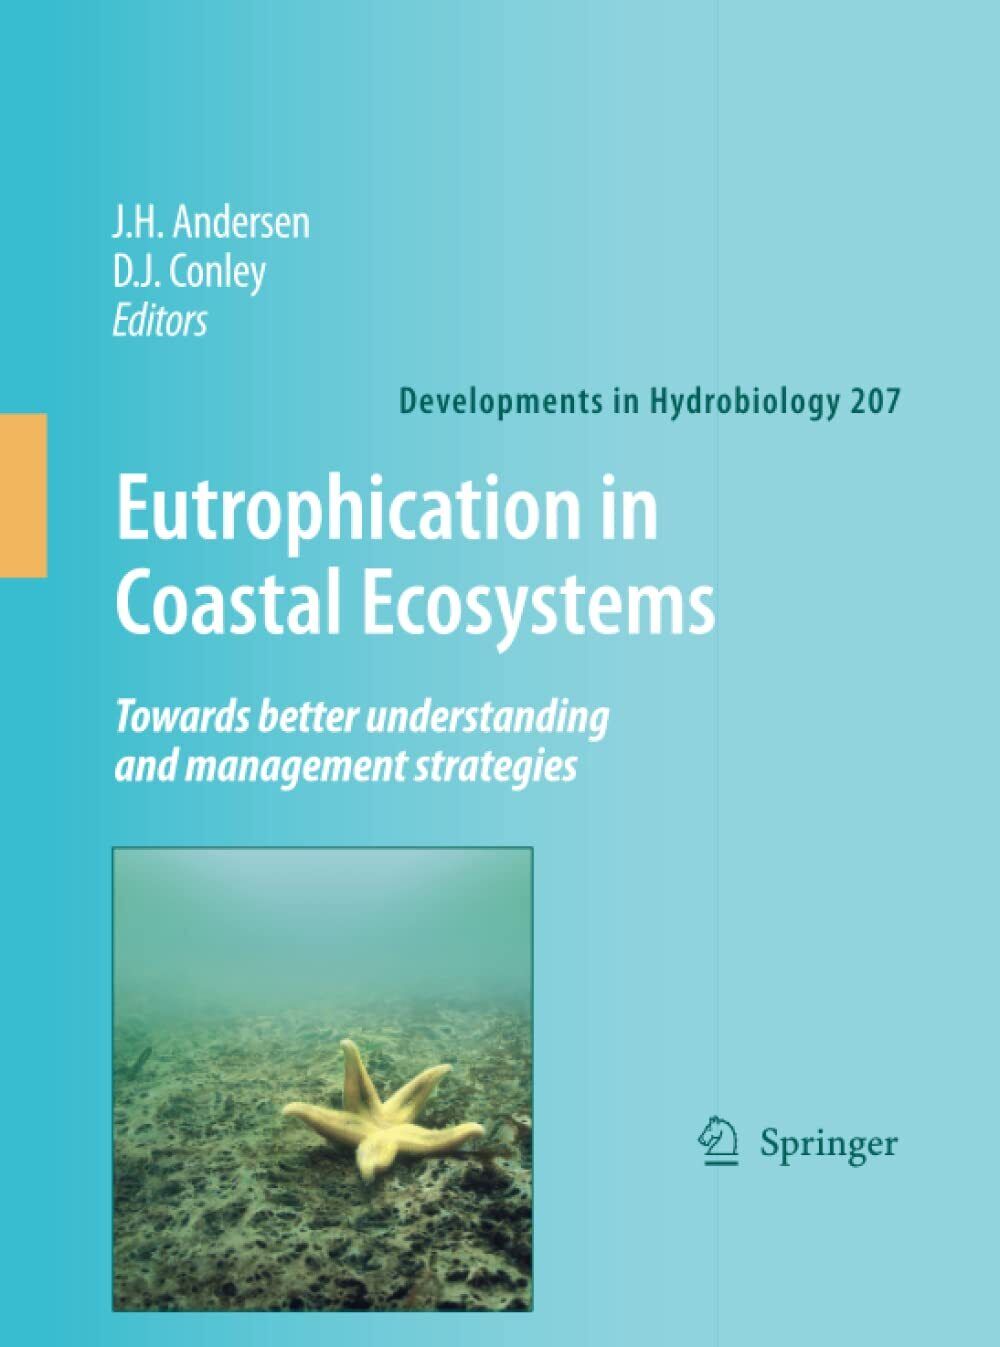 Eutrophication in Coastal Ecosystems - Jesper H. Andersen - Springer, 2012